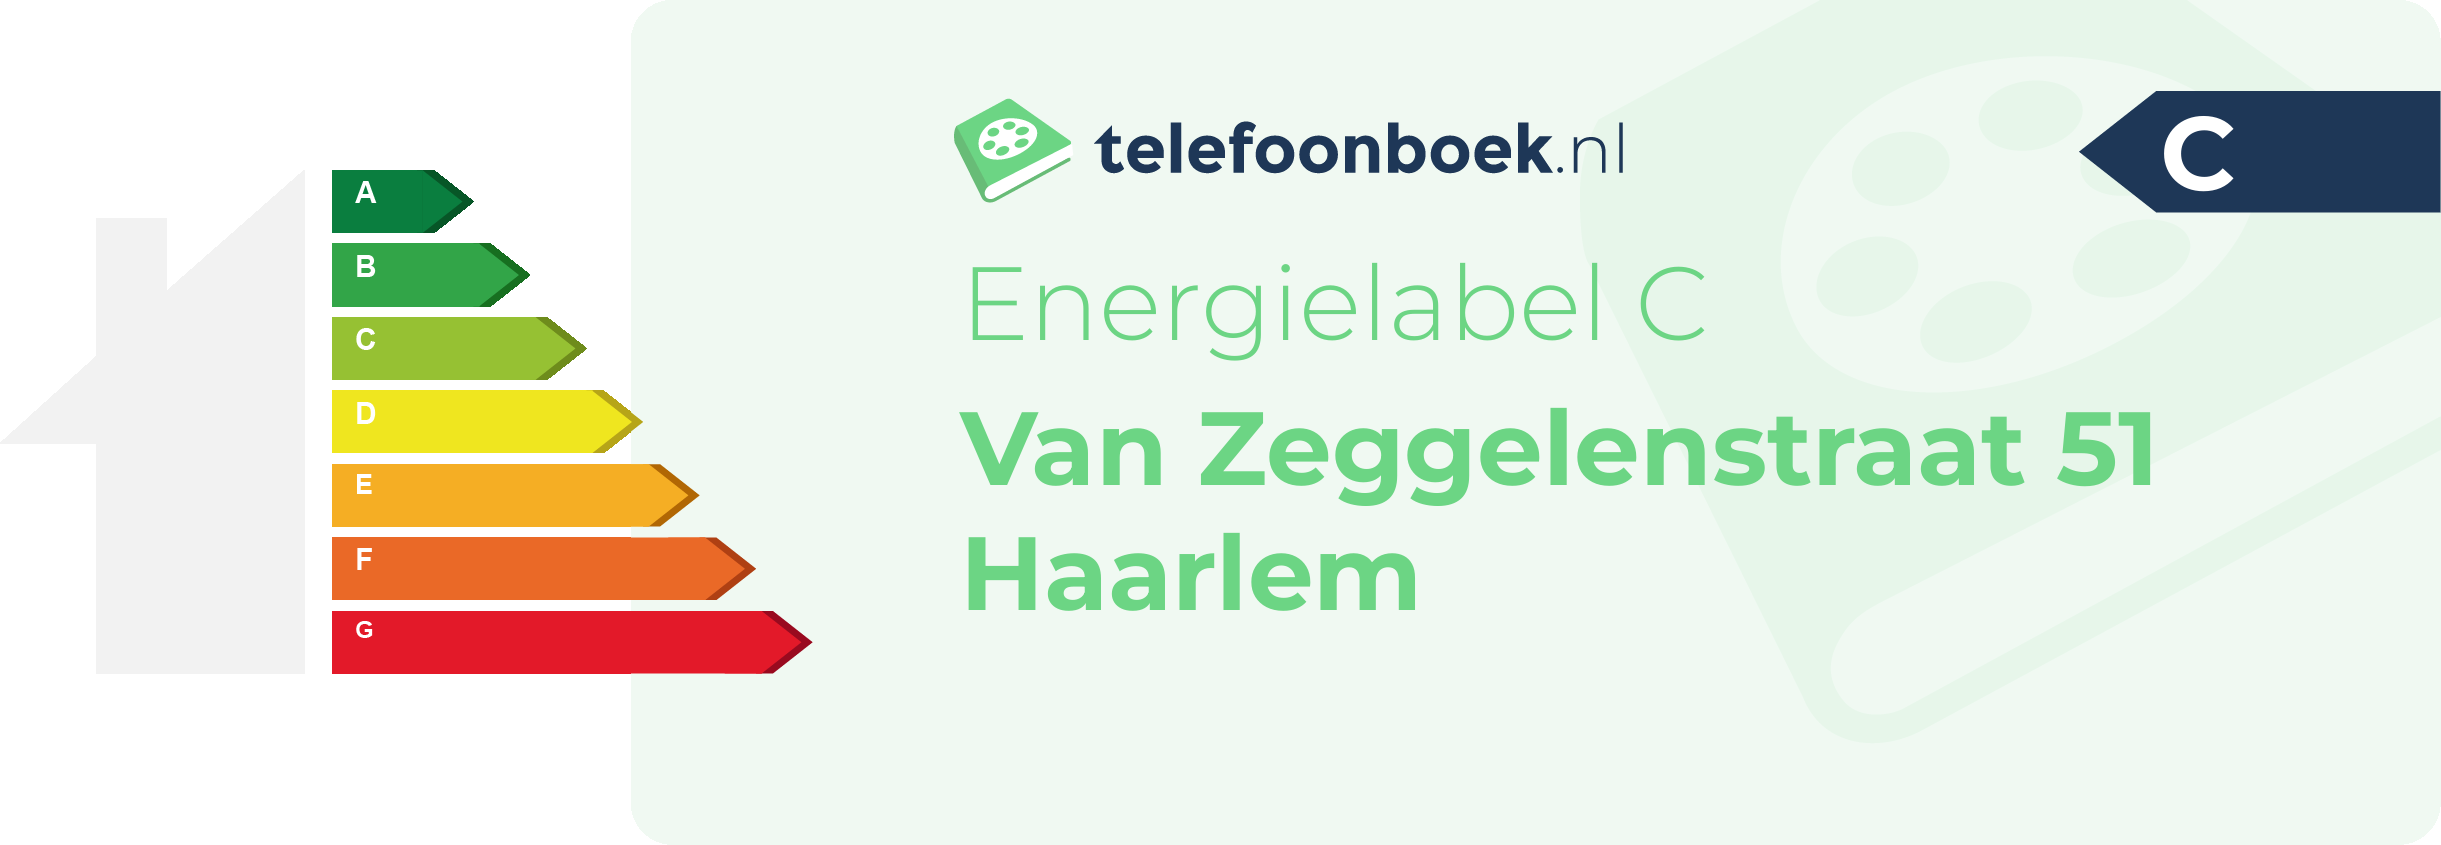 Energielabel Van Zeggelenstraat 51 Haarlem